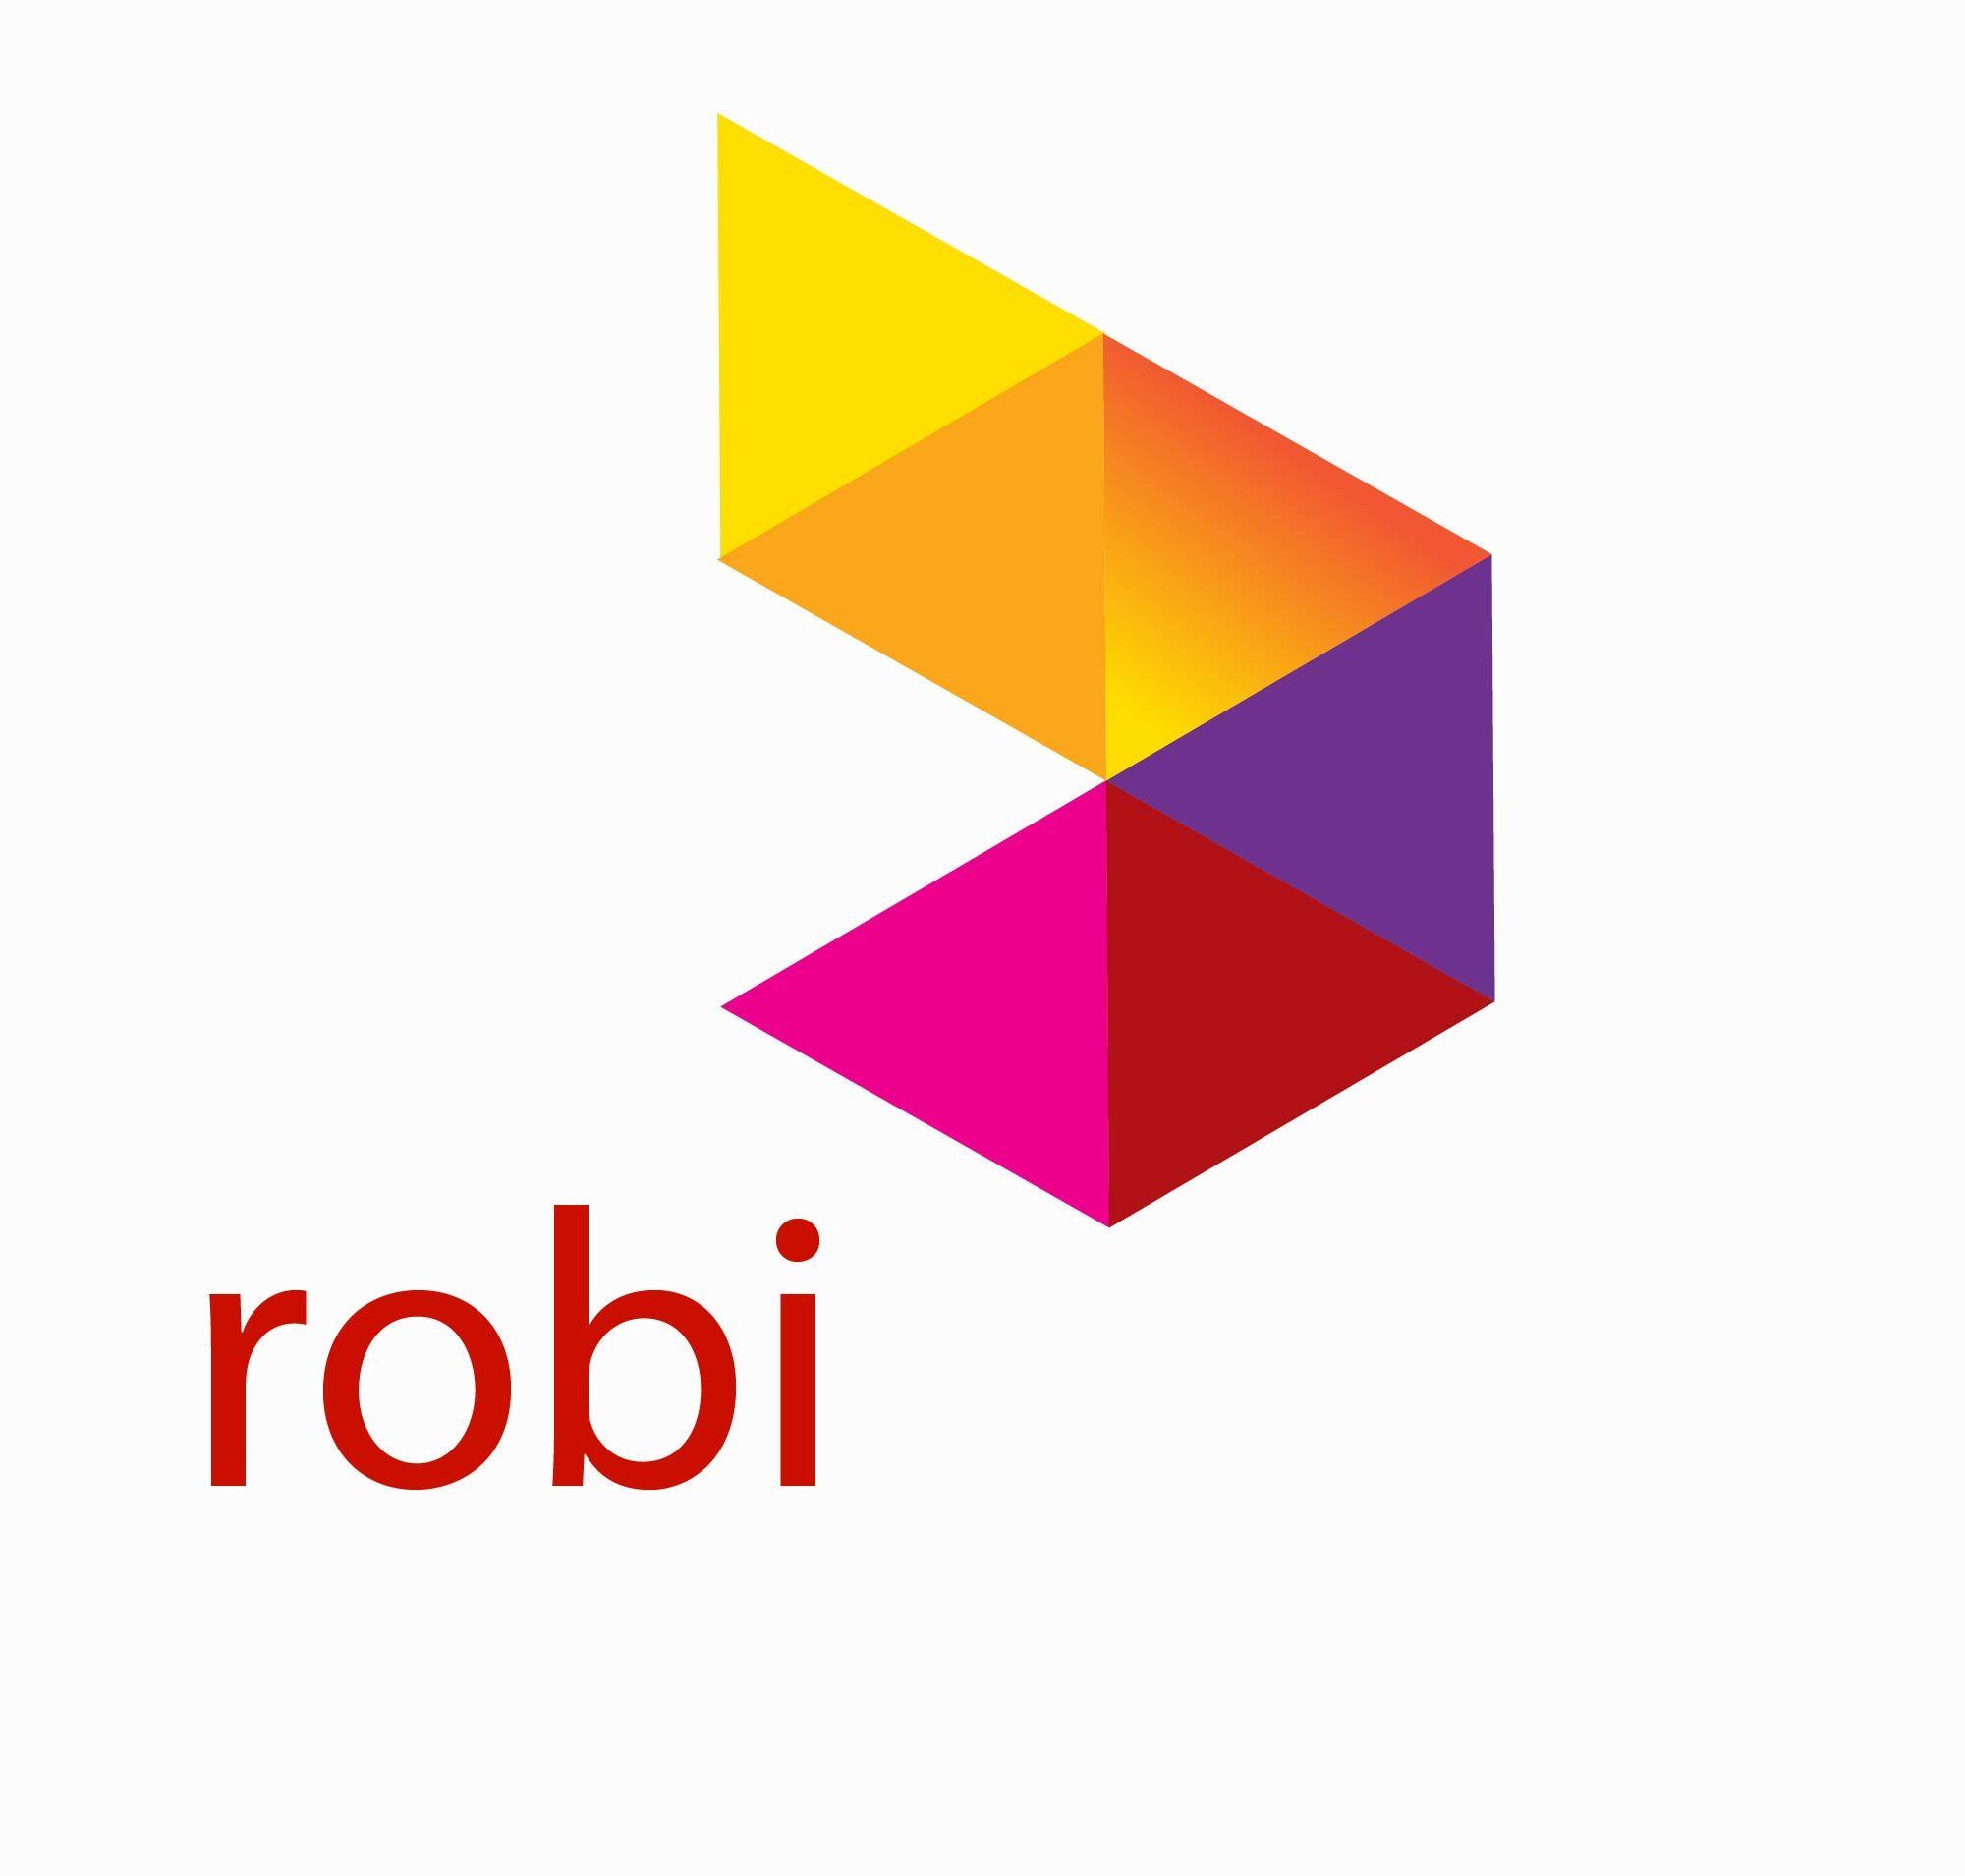 Robi Logo - Robi logo design